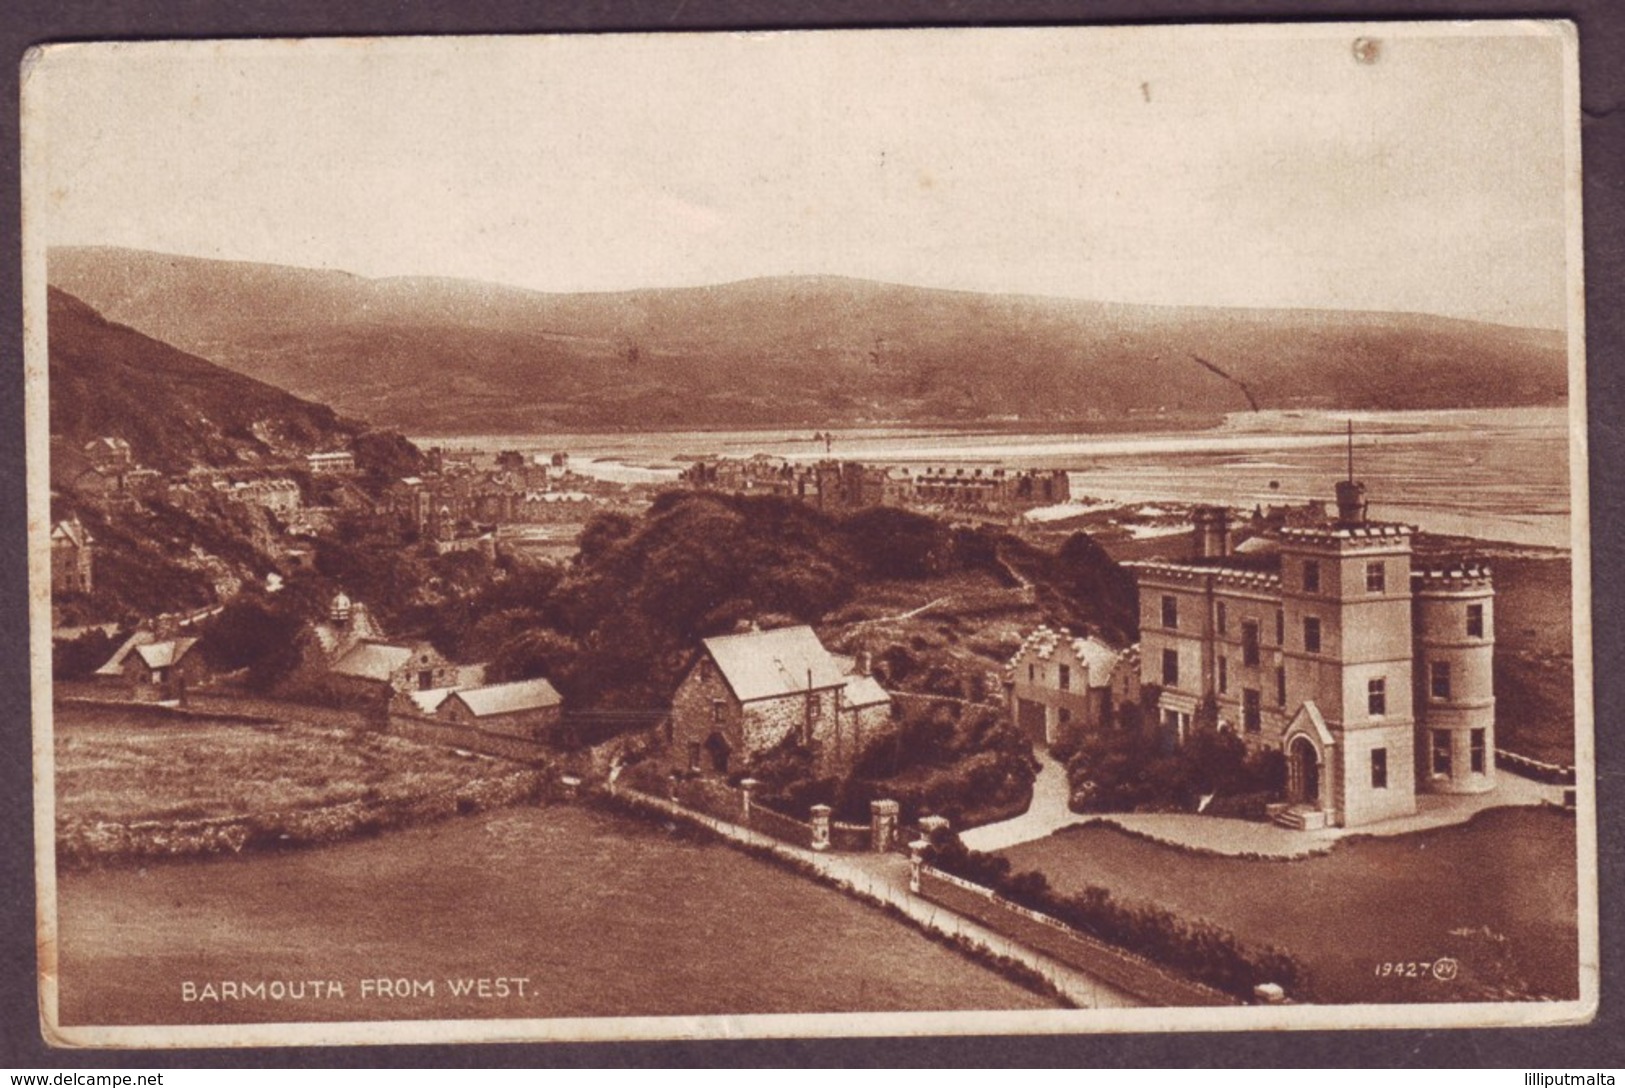 1930 Gwynedd Wales Used Postcard Showing Barmouth From West United Kingdom Caernarvonshire - Caernarvonshire